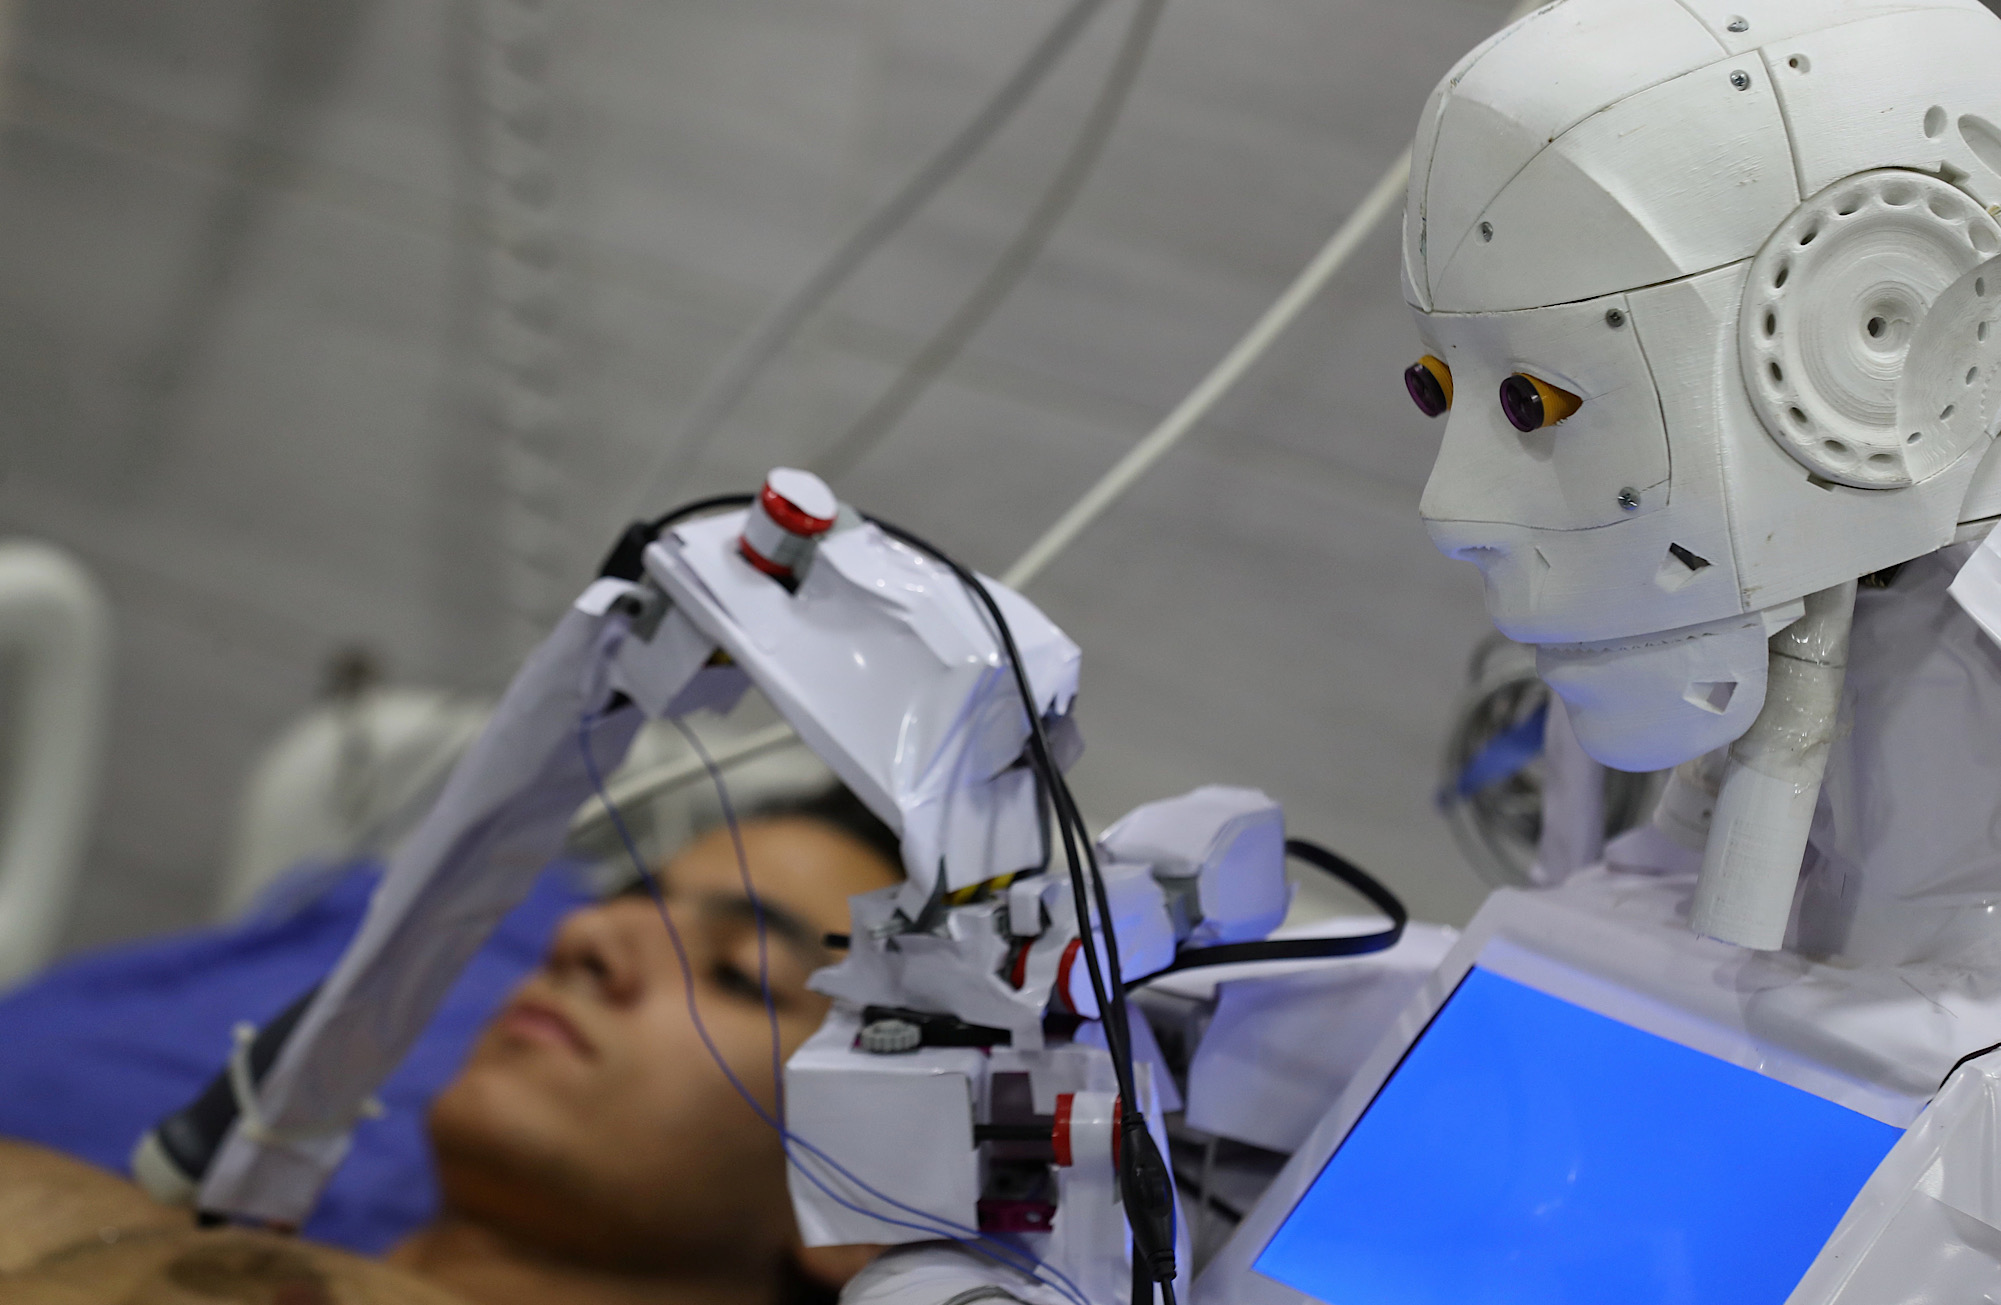 コロナ禍で高まる医療ロボット需要。エジプトではロボット看護師「Cira-03」も登場